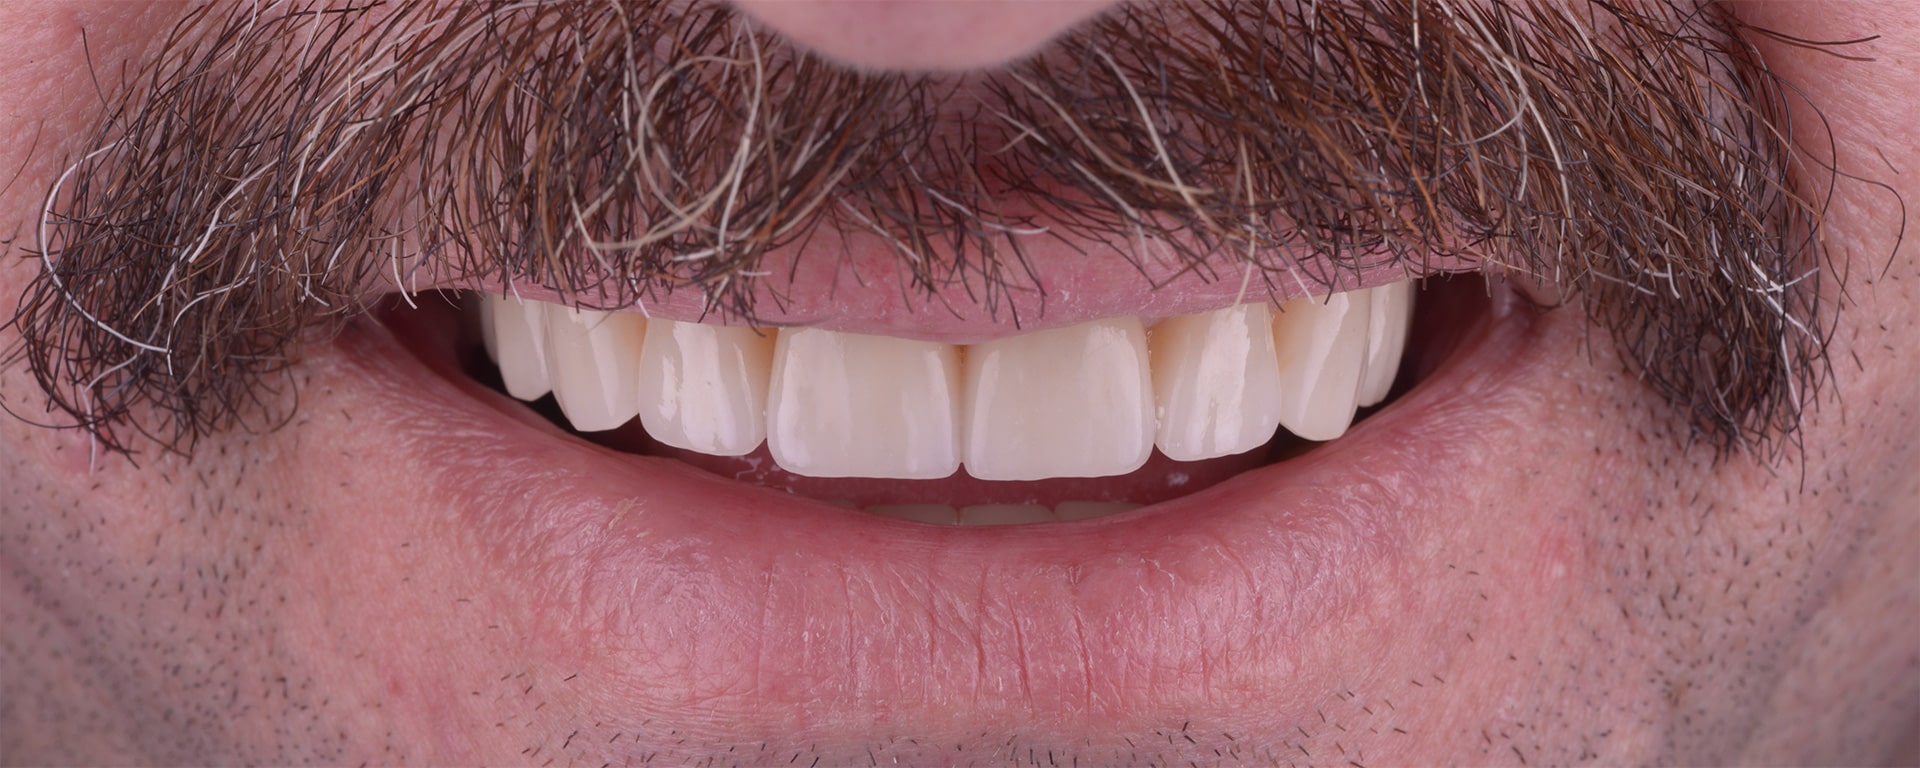 Nicolae reabilitare complexa protetica coroane dentare fatete implanturi dentare clinica dentara stomatologie timis